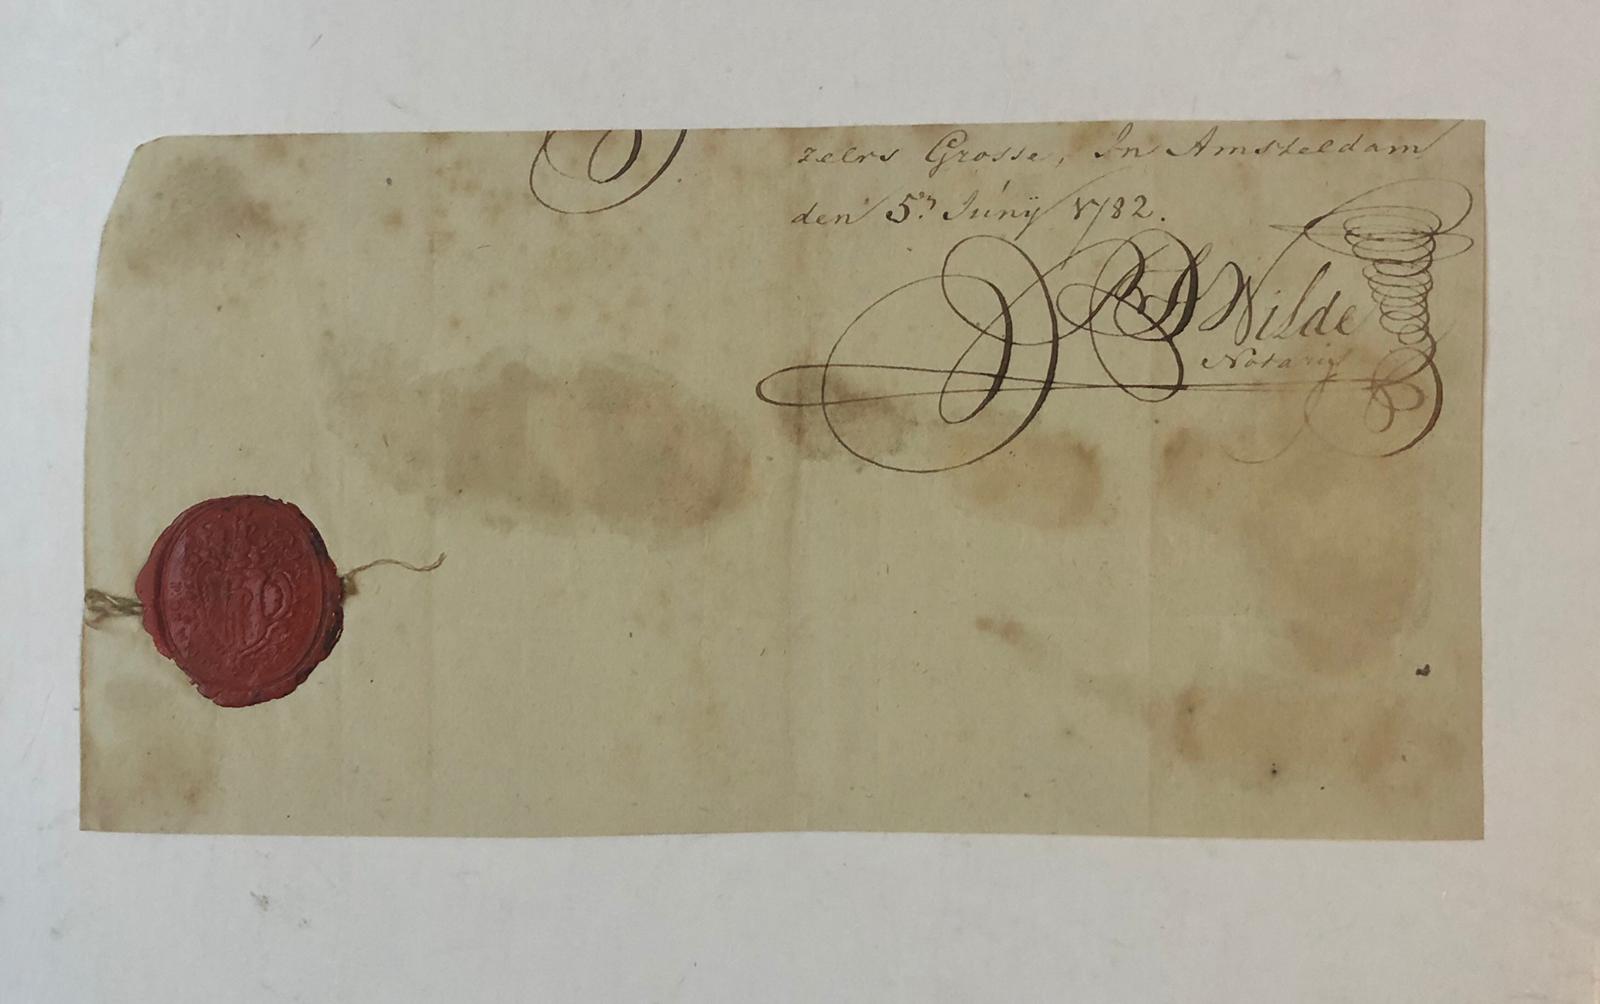  - WILDE, DE Handtekening en lakzegel van notaris P. de Wilde. Amsterdam 1782.